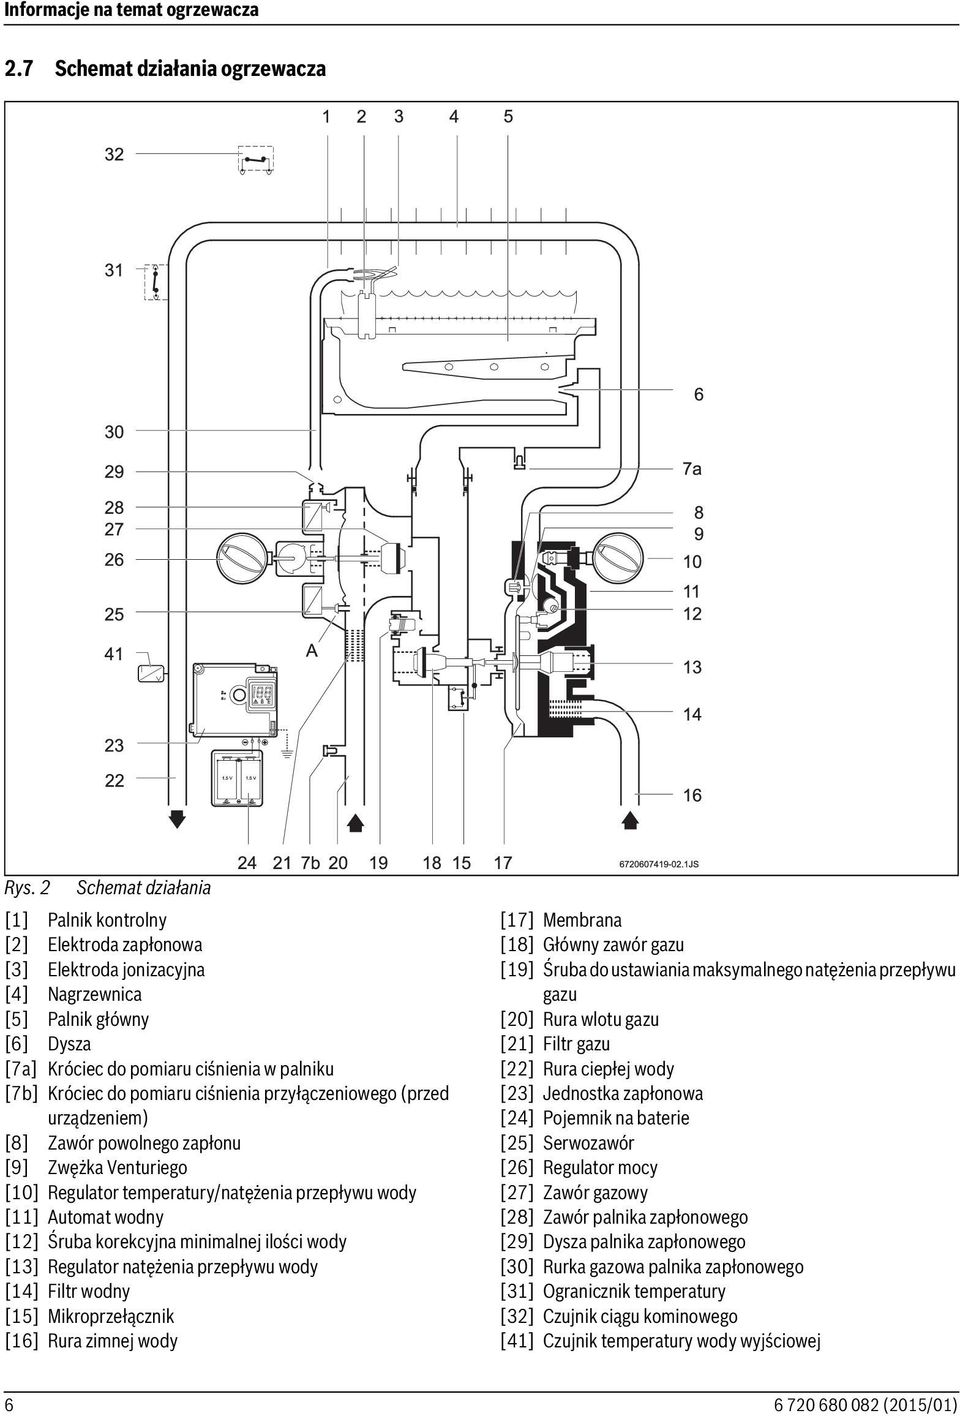 pomiaru ciśnienia przyłączeniowego (przed urządzeniem) [8] Zawór powolnego zapłonu [9] Zwężka Venturiego [10] Regulator temperatury/natężenia przepływu wody [11] Automat wodny [12] Śruba korekcyjna